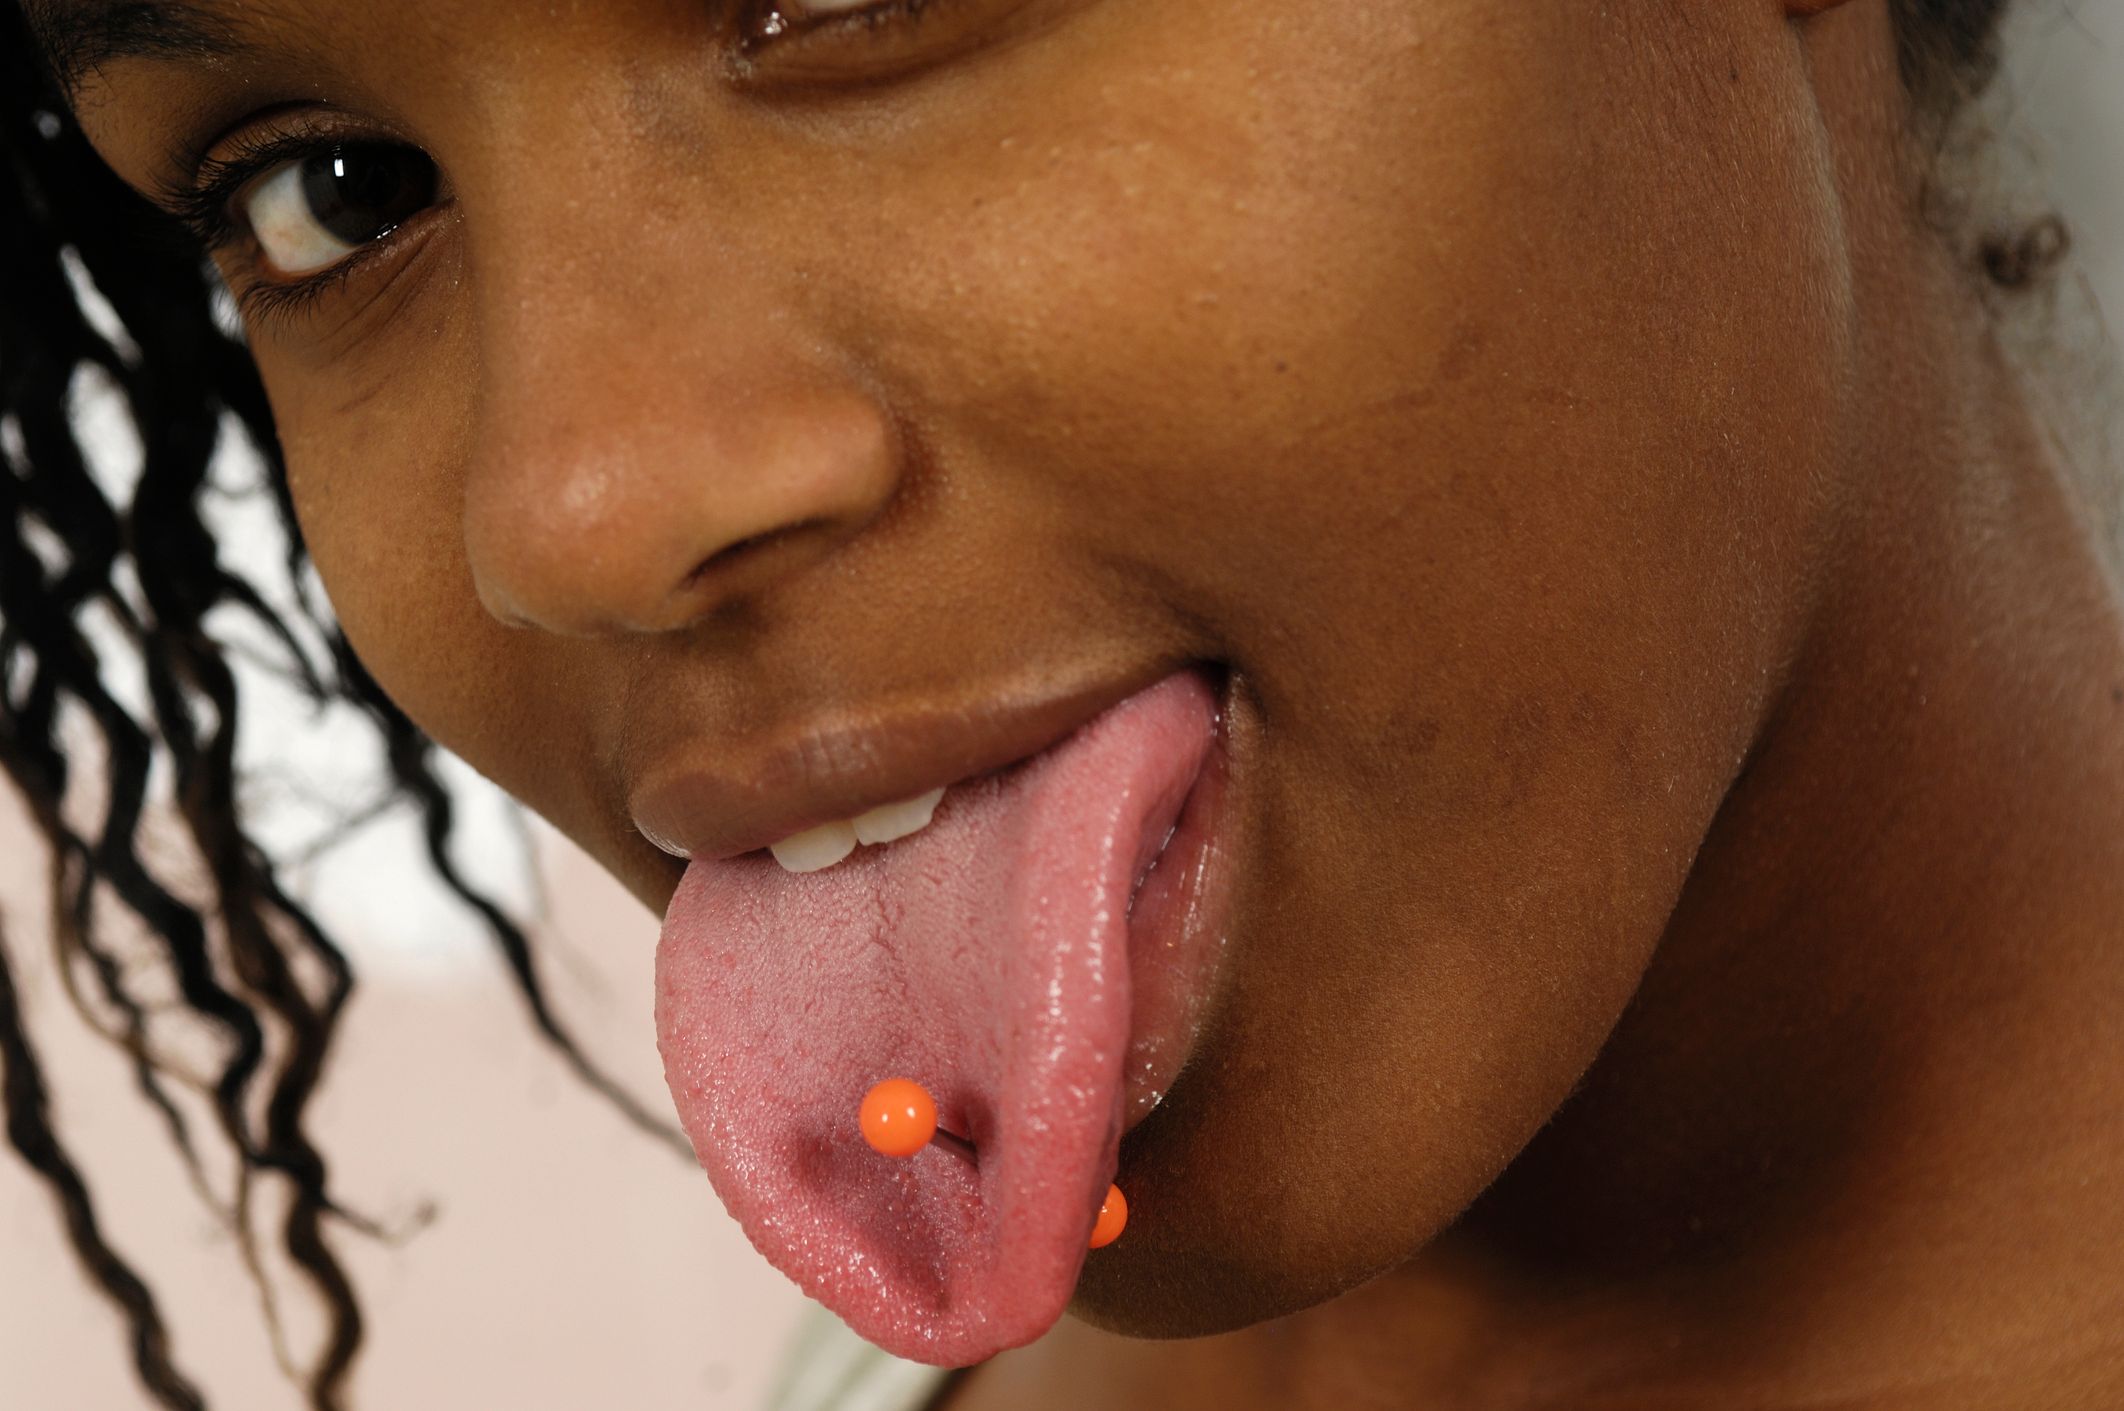 Oralni seks s piercingom na jeziku